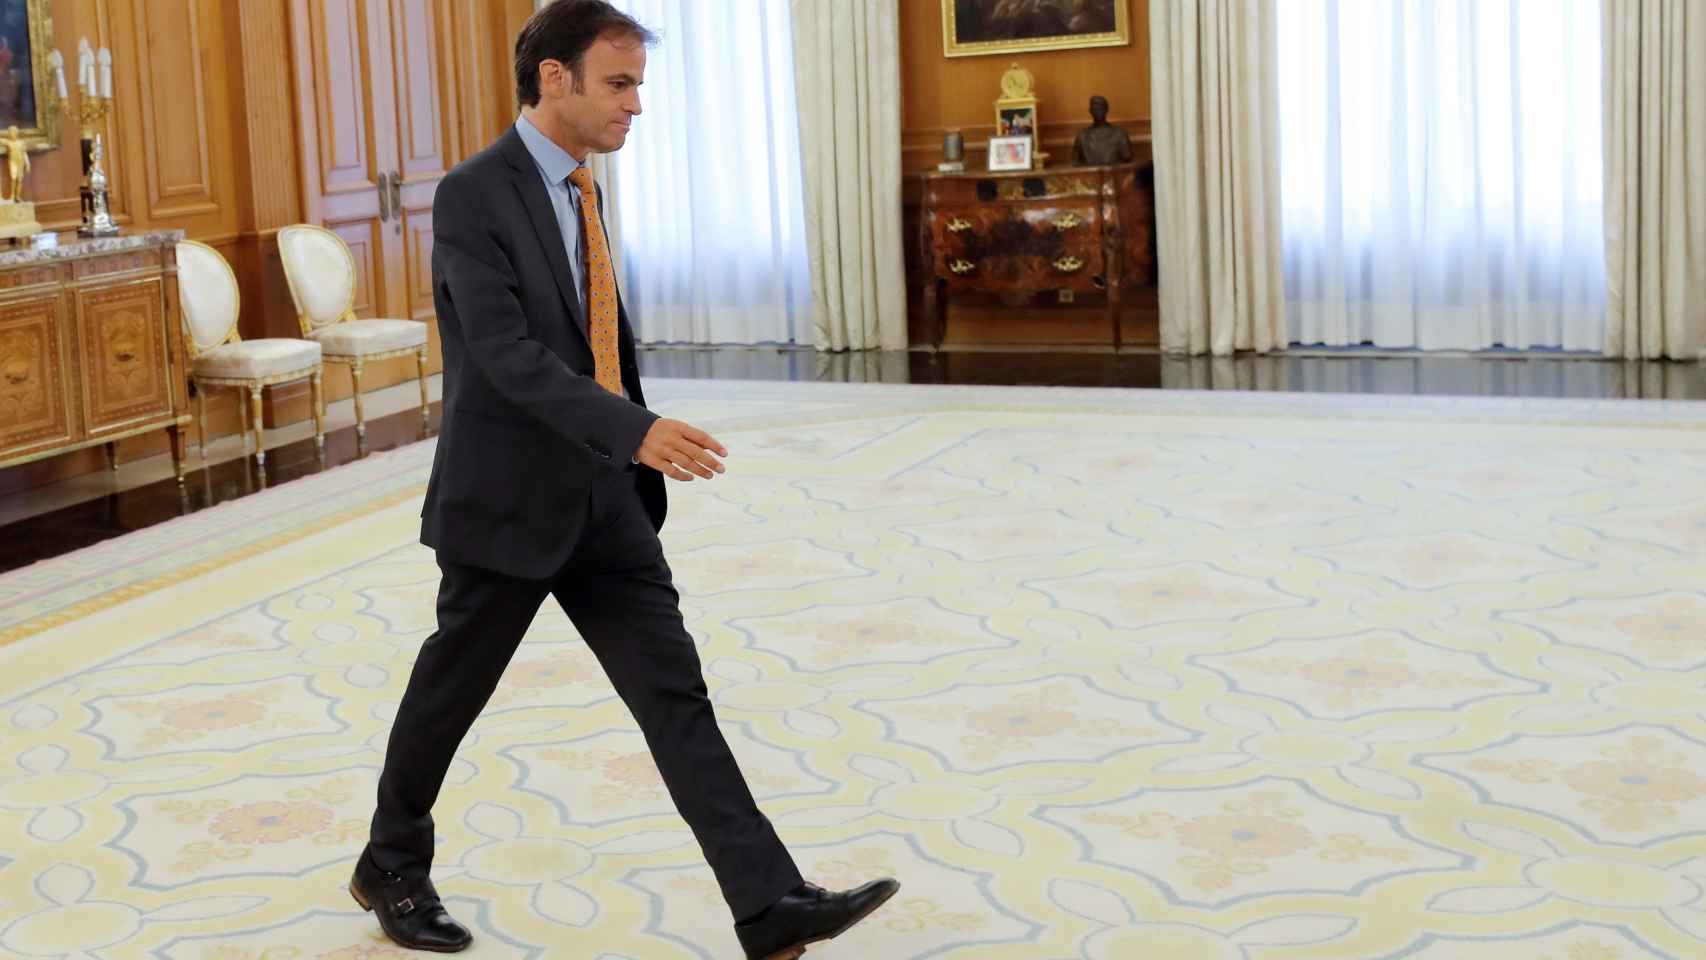 El diputado de En Comú Podem, Jaume Asens, en su visita al Rey en el Palacio de la Zarzuela / EFE